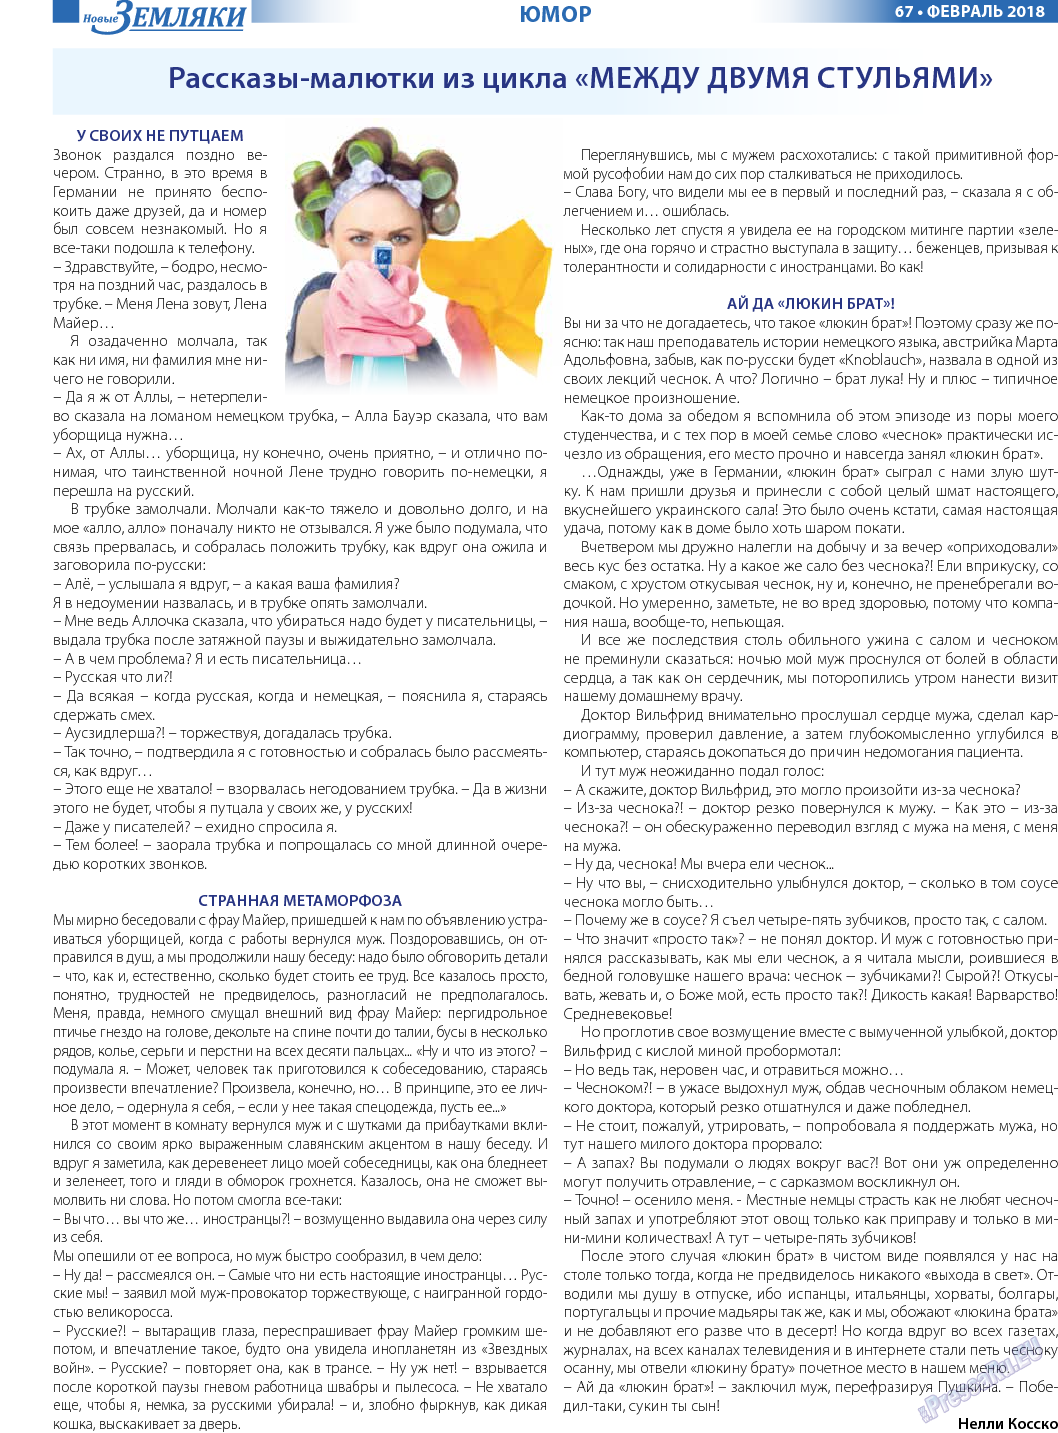 Новые Земляки, газета. 2018 №2 стр.67